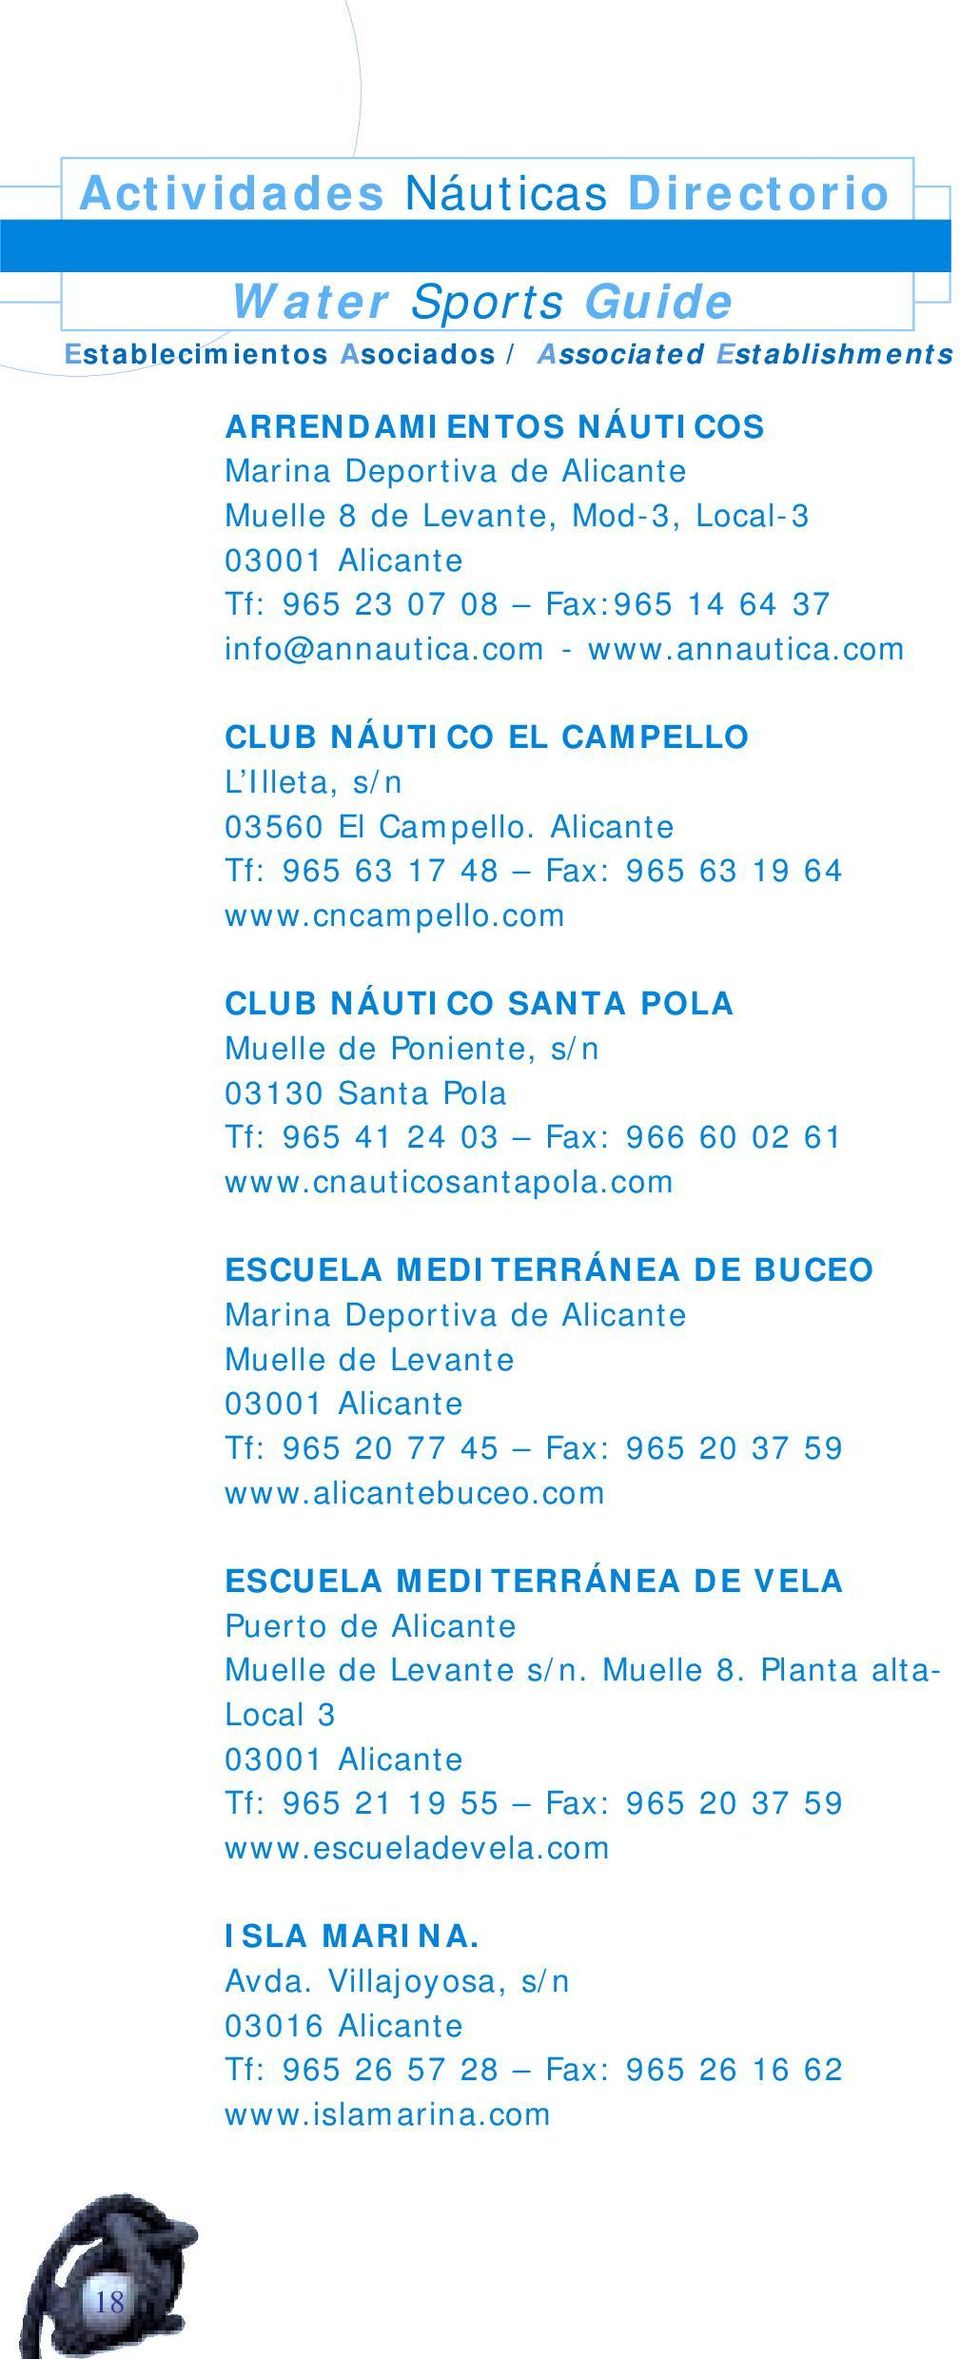 cncampello.com CLUB NÁUTICO SANTA POLA Muelle de Poniente, s/n 03130 Santa Pola Tf: 965 41 24 03 Fax: 966 60 02 61 www.cnauticosantapola.